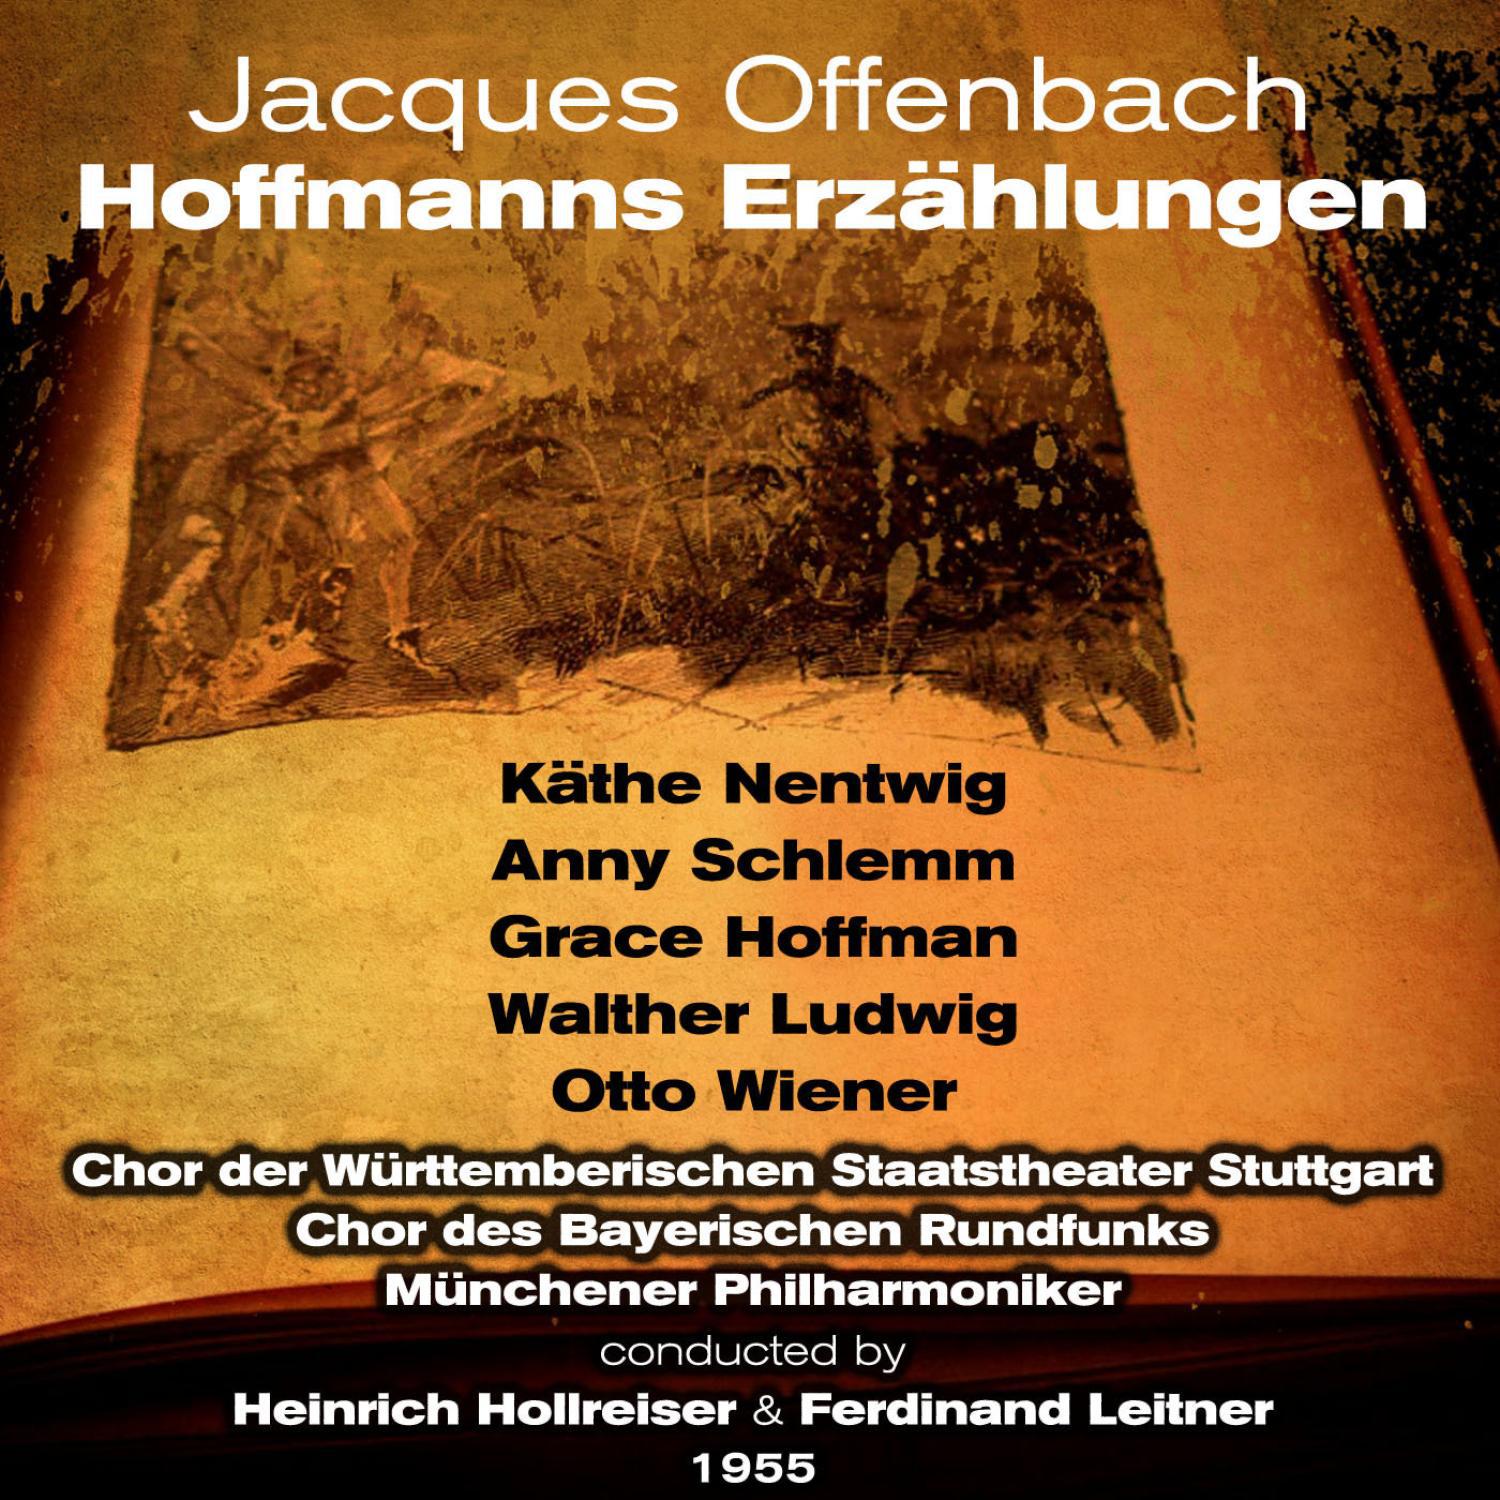 Chor der Württemberischen Staatstheater Stuttgart - Jacques Offenbach: Hoffmanns Erzählungen - 